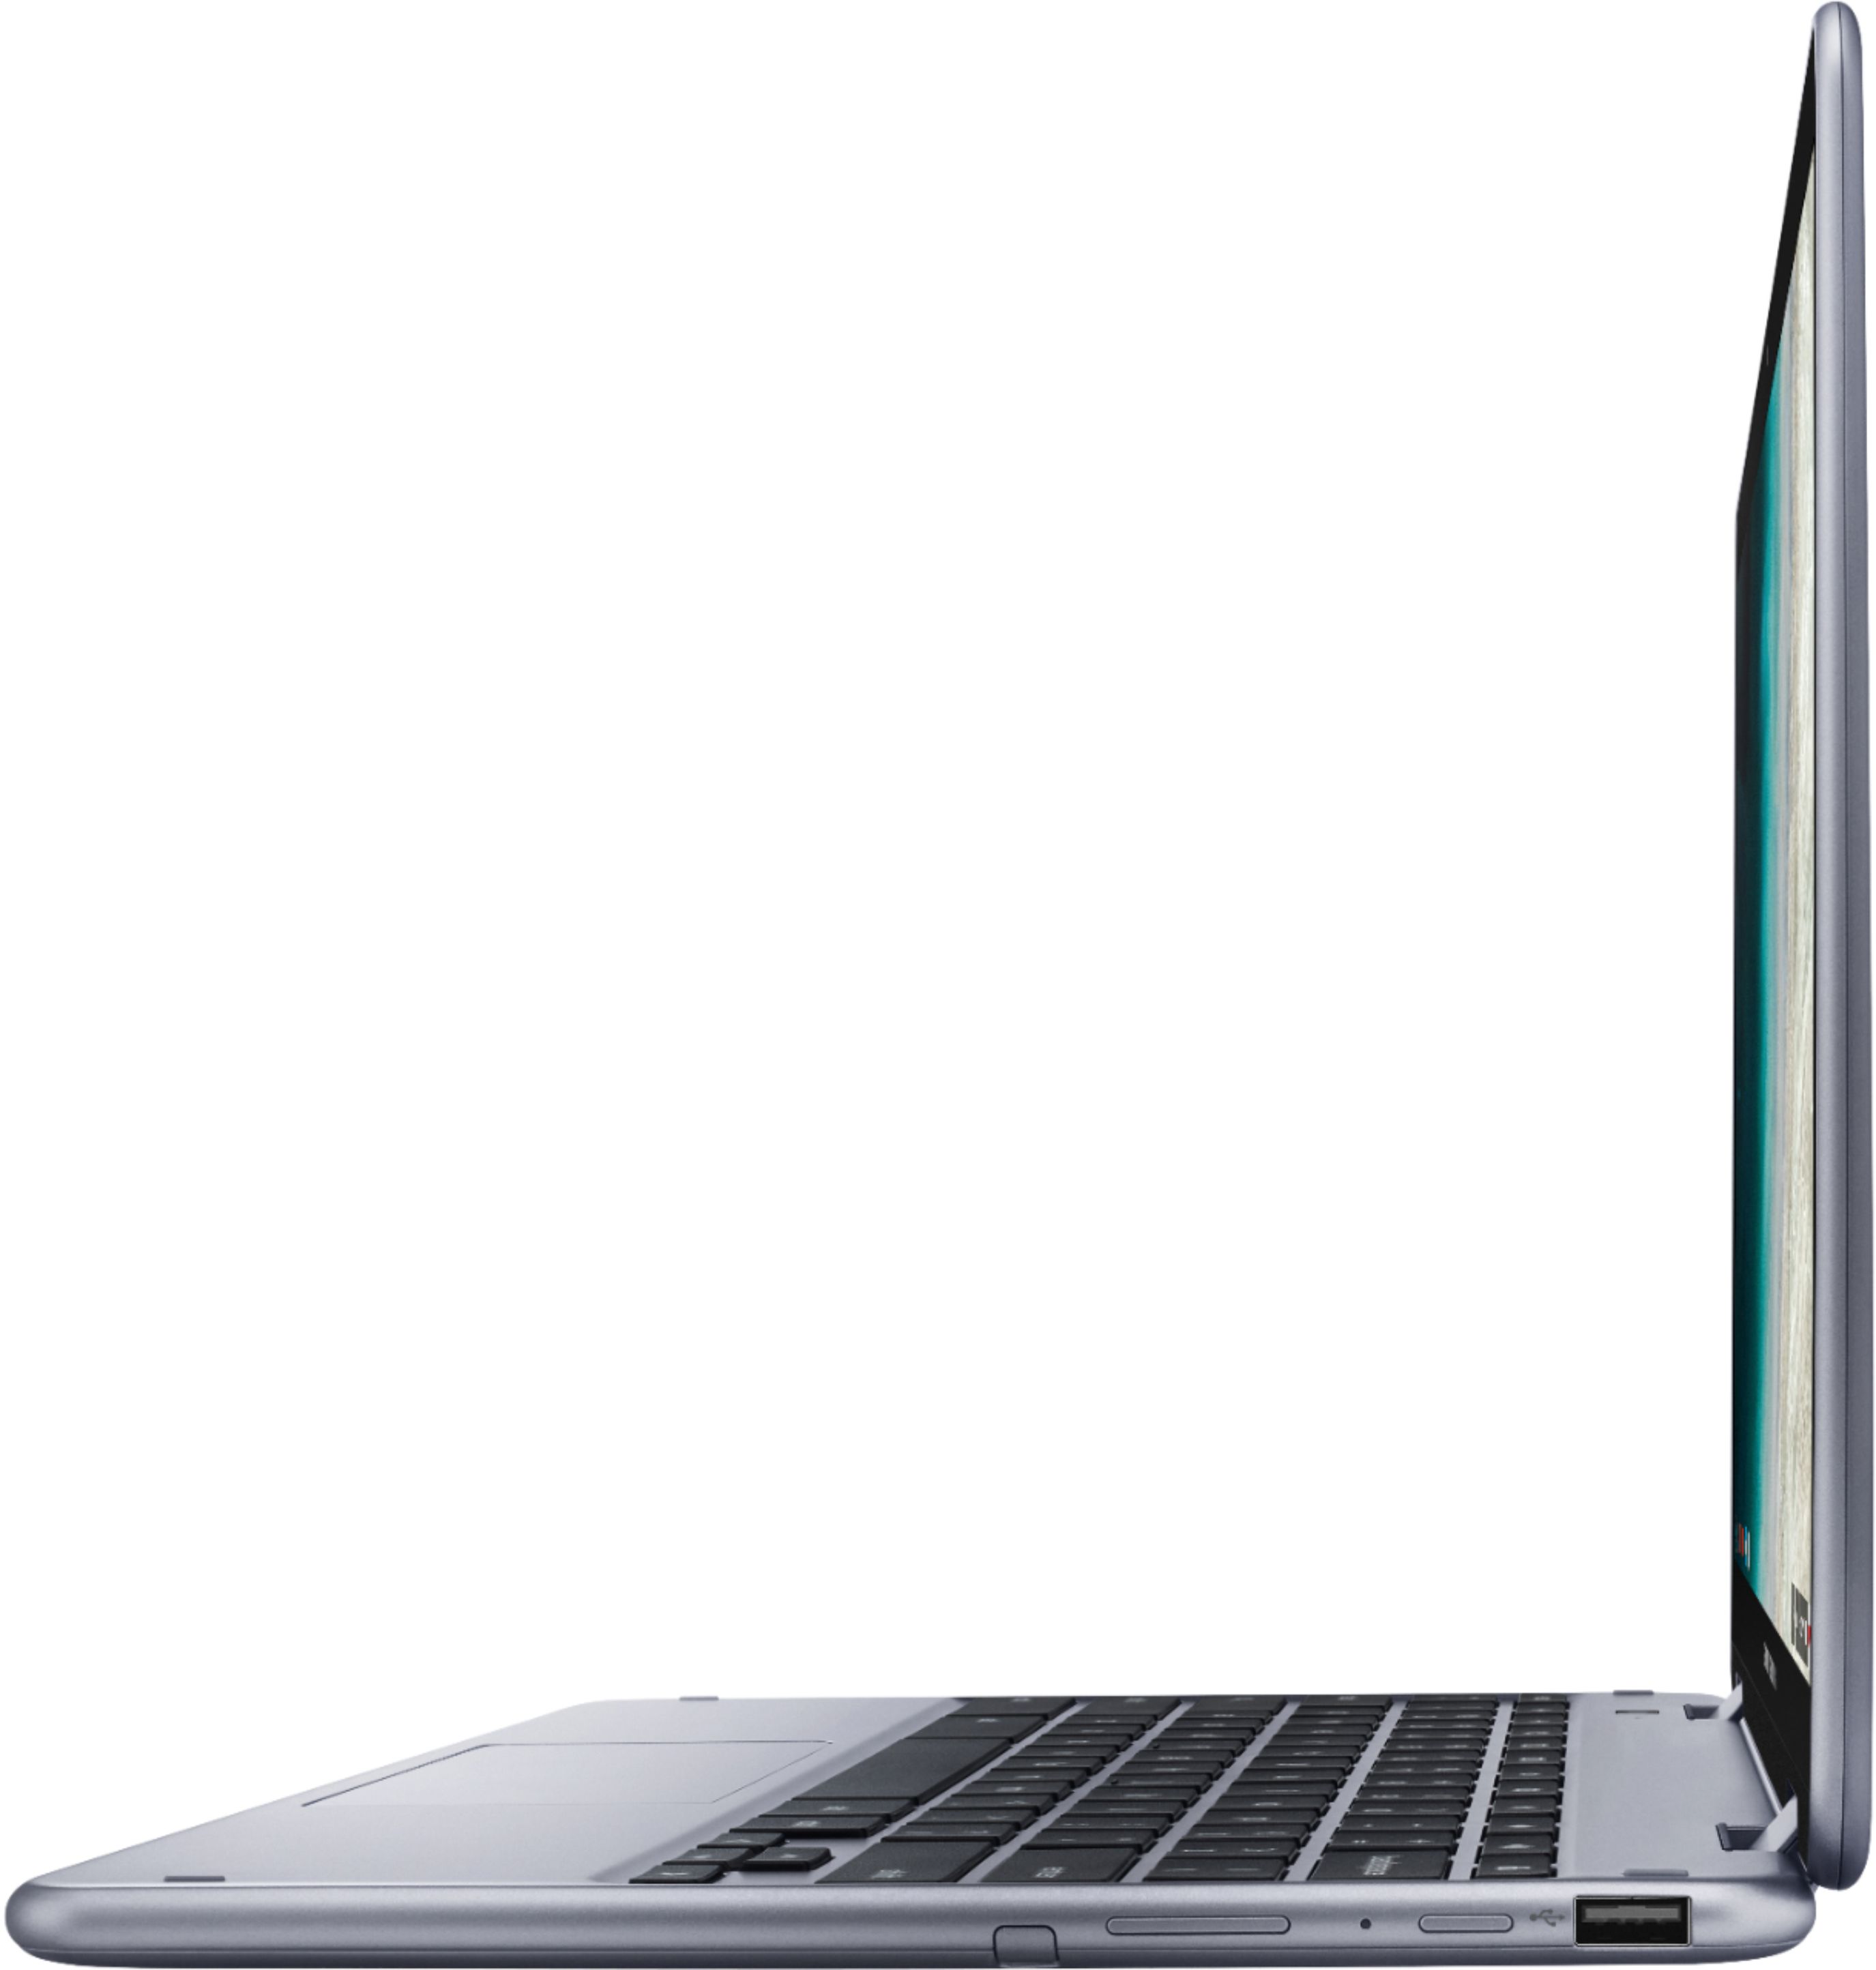 SAMSUNG Chromebook Plus V2, 2-in-1, 4GB RAM, 32GB eMMC, 13MP